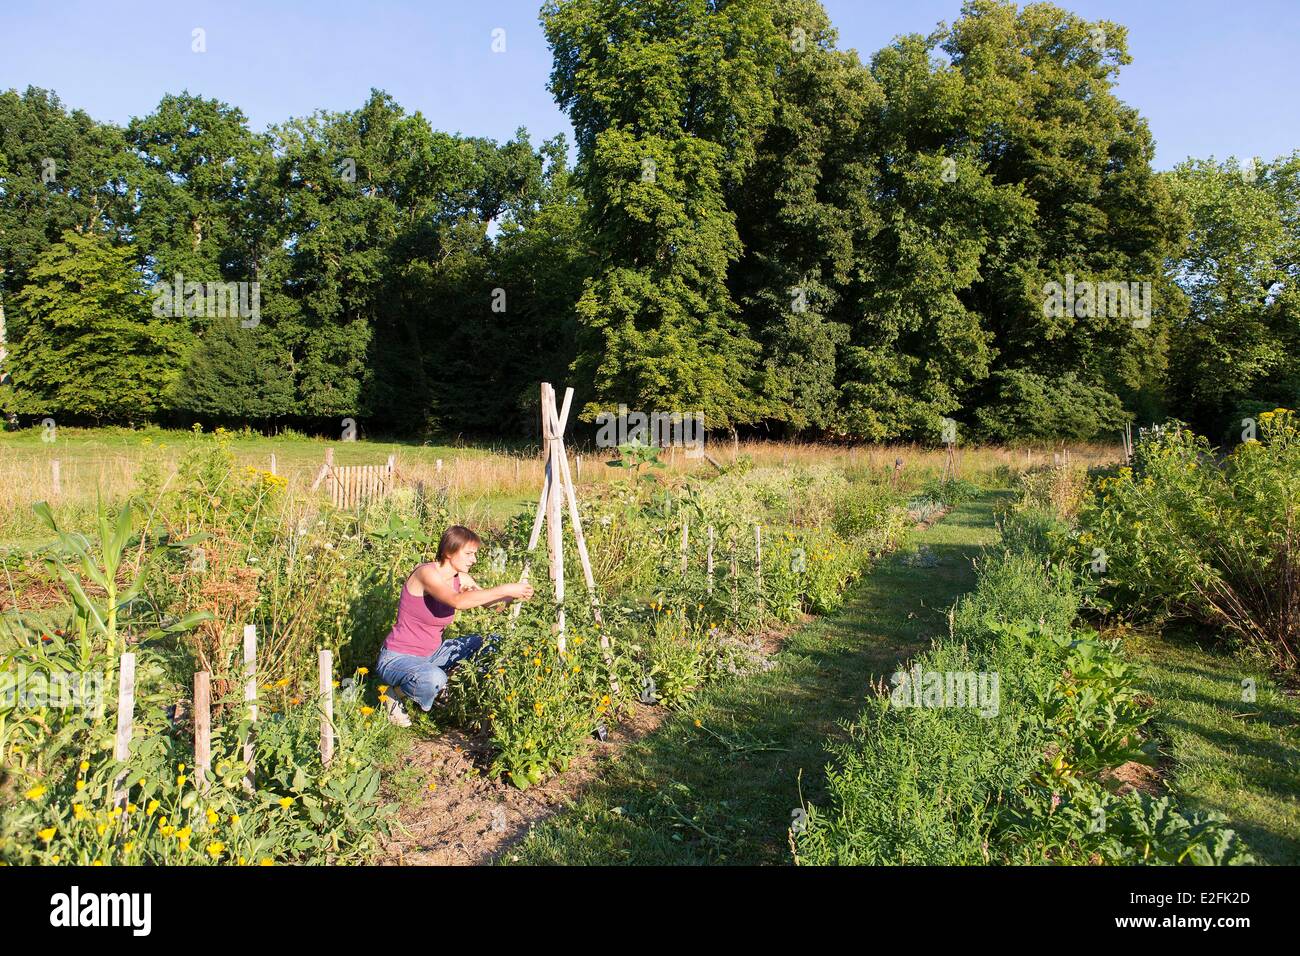 France, Seine et Marne, Vernou la Celle sur Seine, Graville castle, vegetable garden Stock Photo